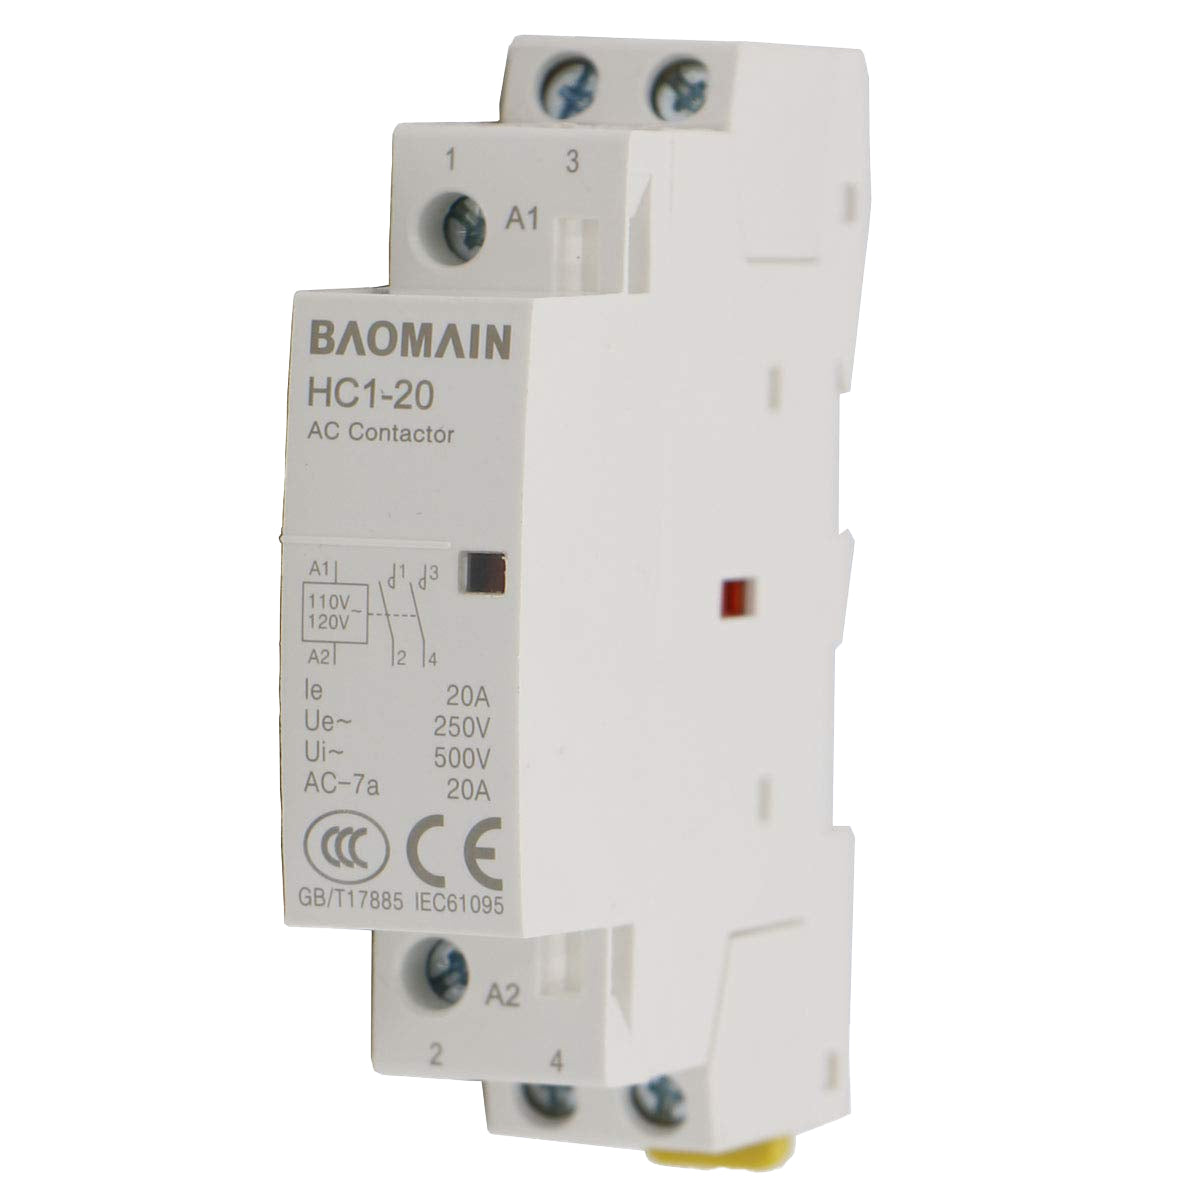 Circuit Control AC Contactor 110V 20A 2 Pole Relay – BAOMAIN